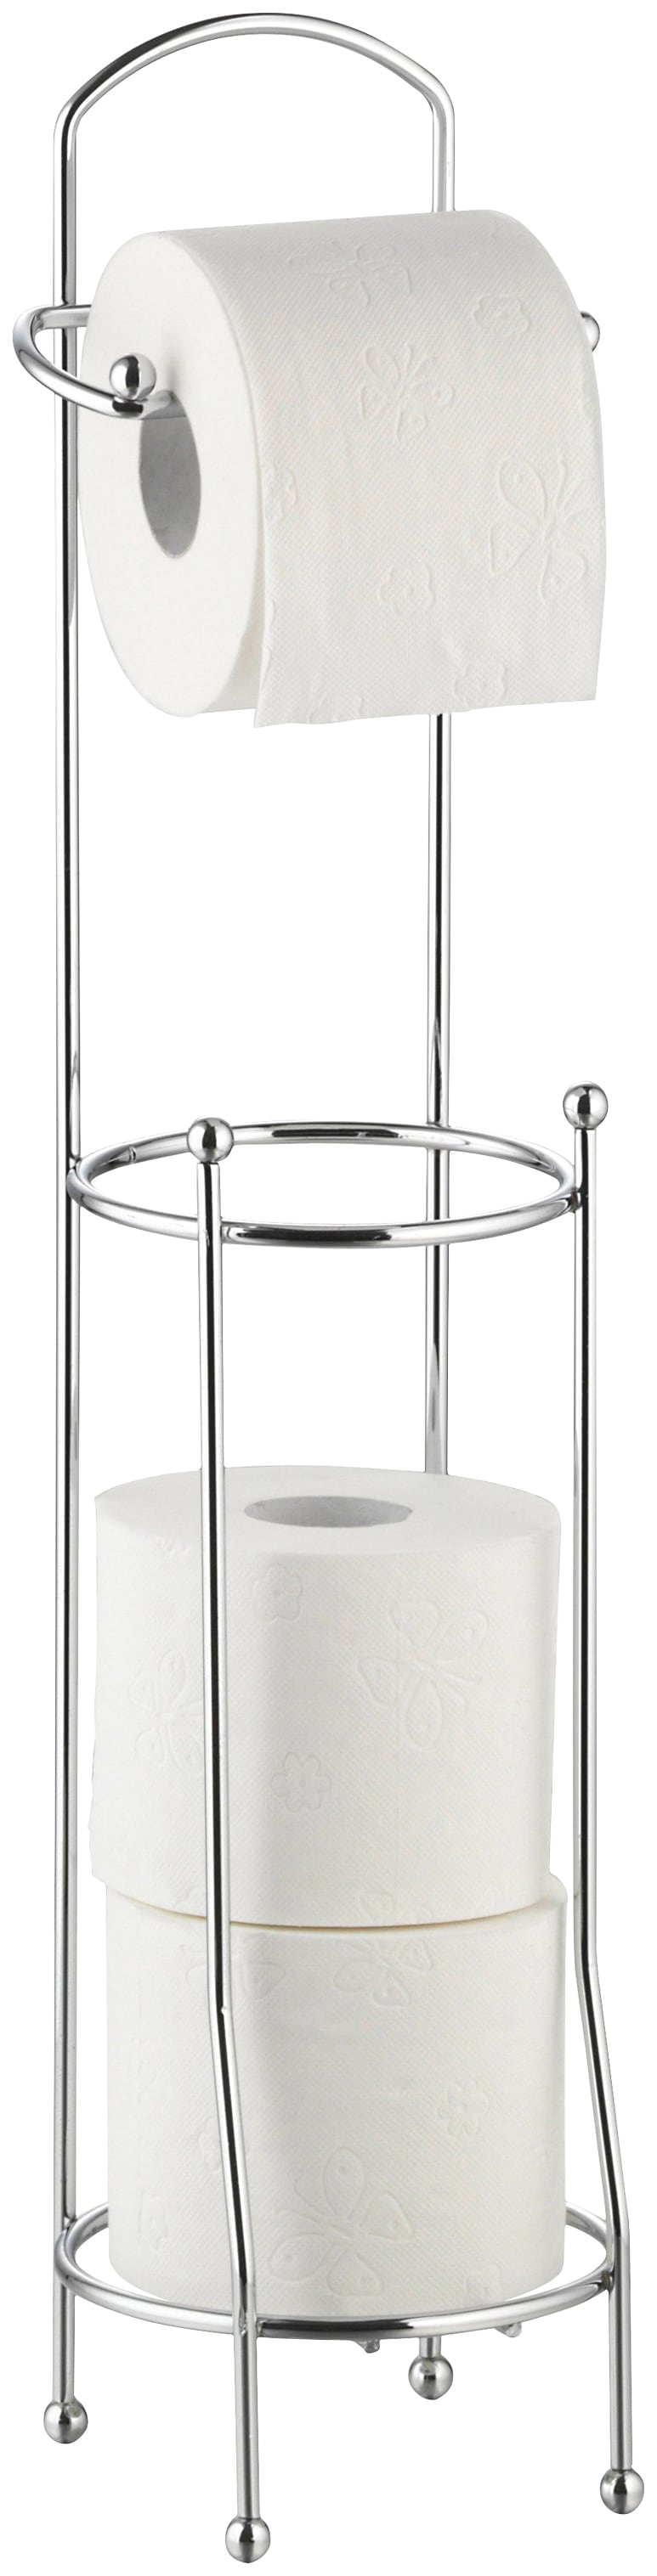 axentia Toilettenpapierhalter »Udana«, für ca. 4 Rollen, Länge: 15,5 cm